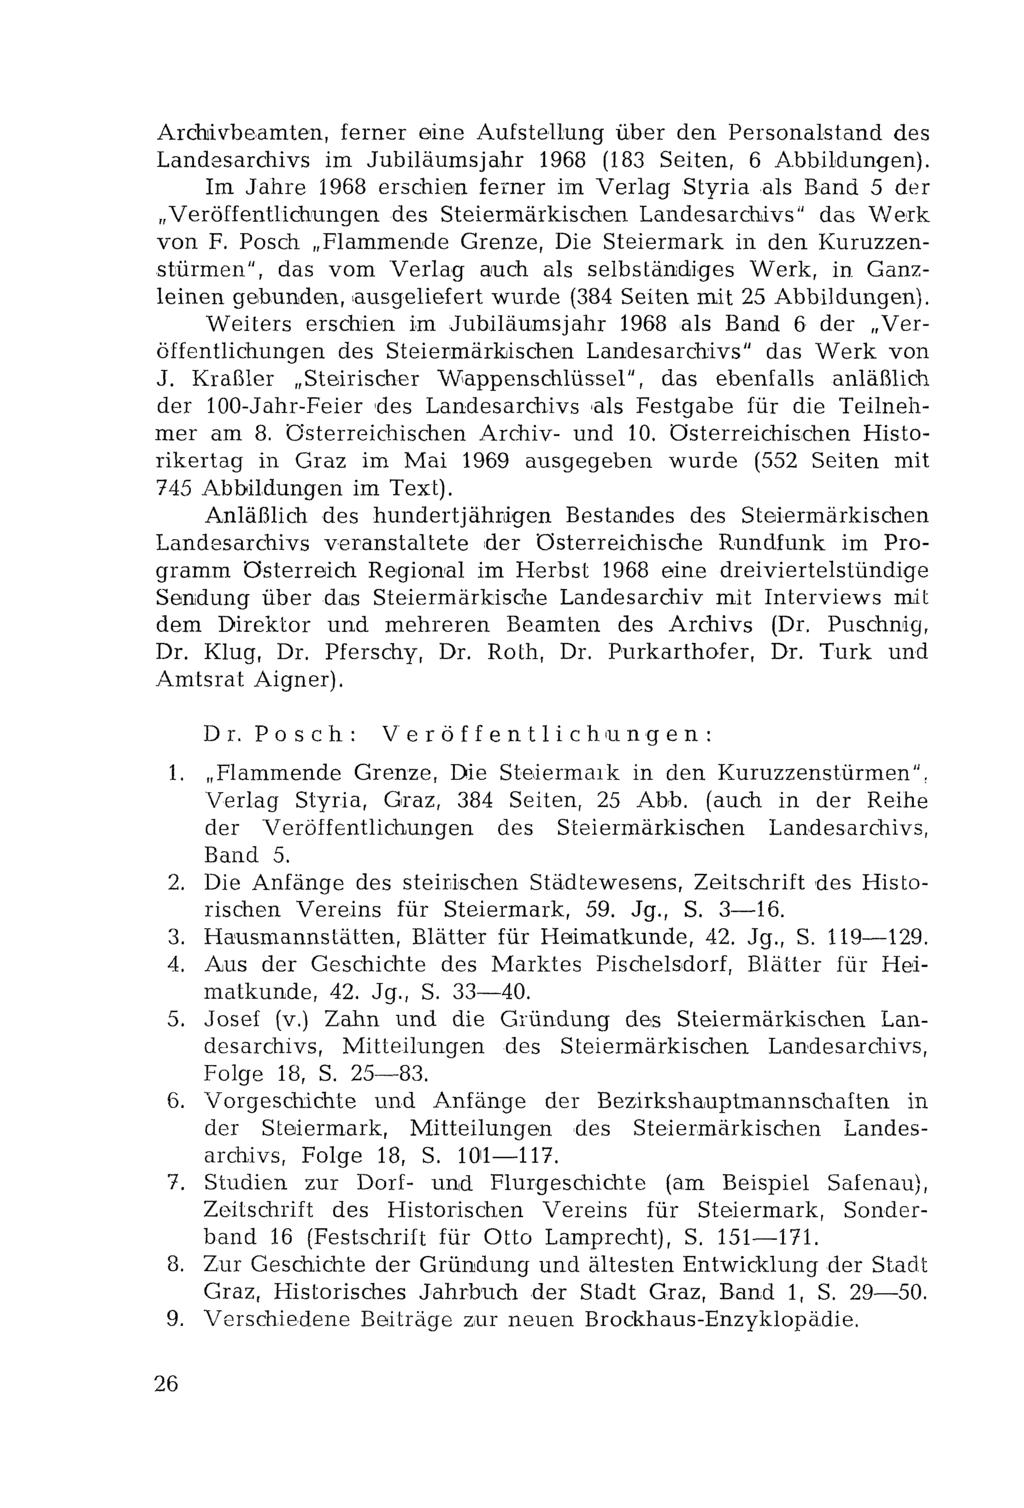 Archivbeamten, ferner eine Aufstellung über den Personalstand des Landesarchivs im Jubiläumsjahr 1968 (183 Seiten, 6 Abbildungen).